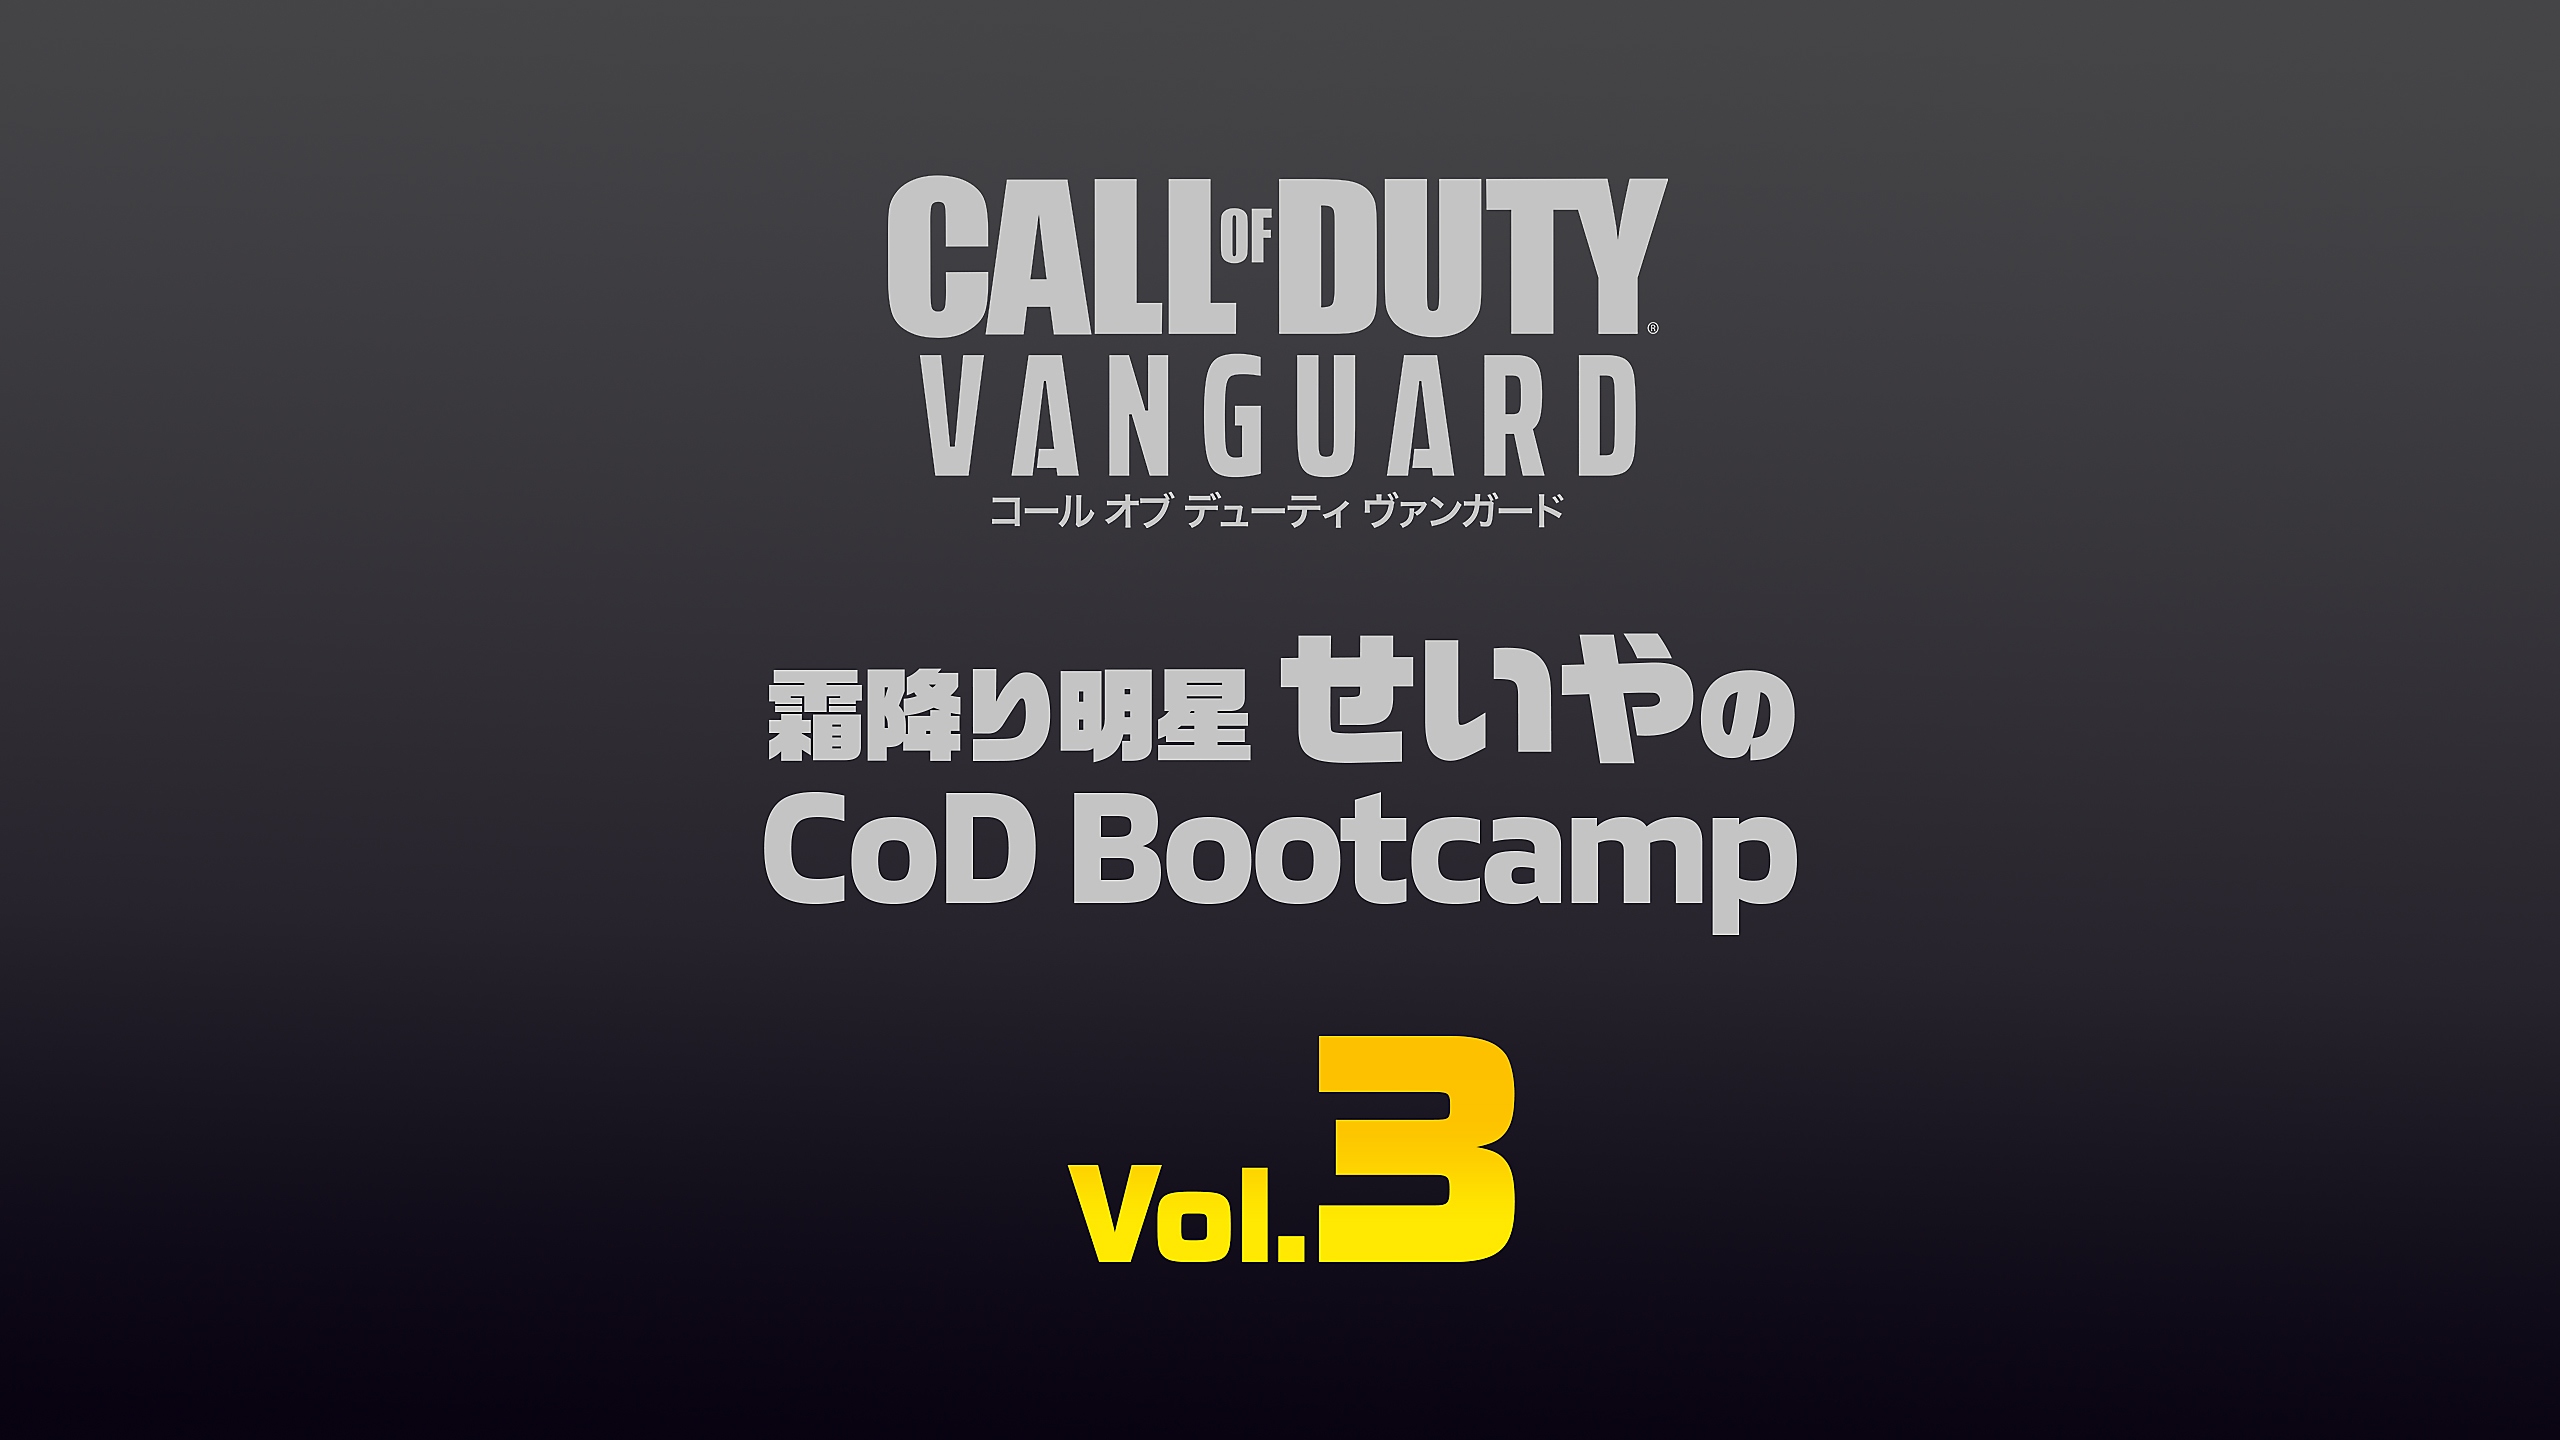 『コール オブ デューティ ヴァンガード』 霜降り明星せいやのCoD Bootcamp Vol.3